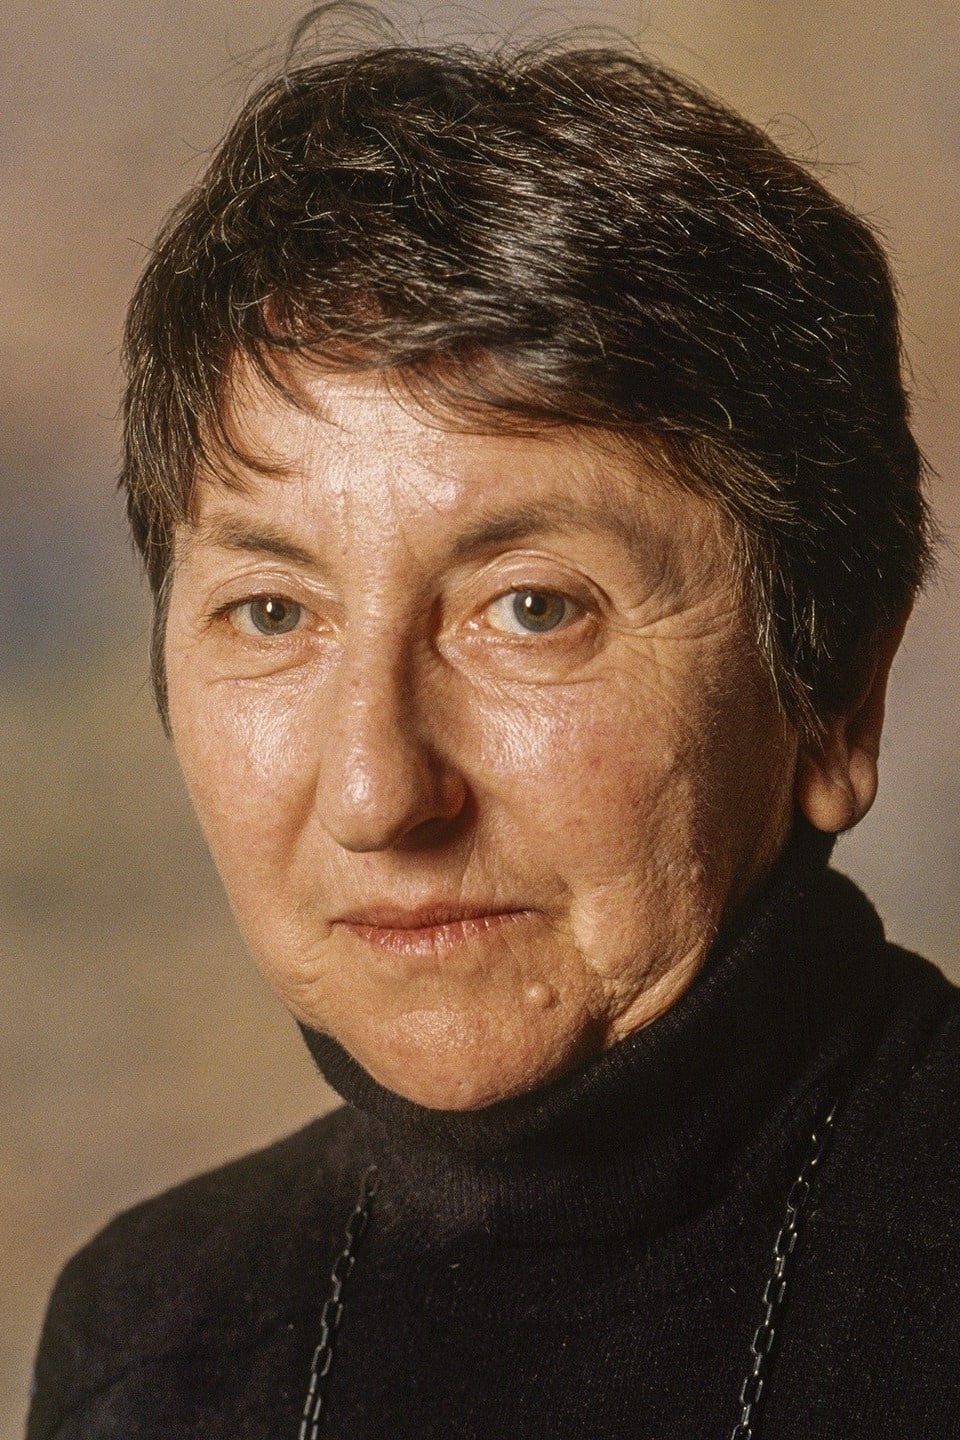 Suzanne Schiffman